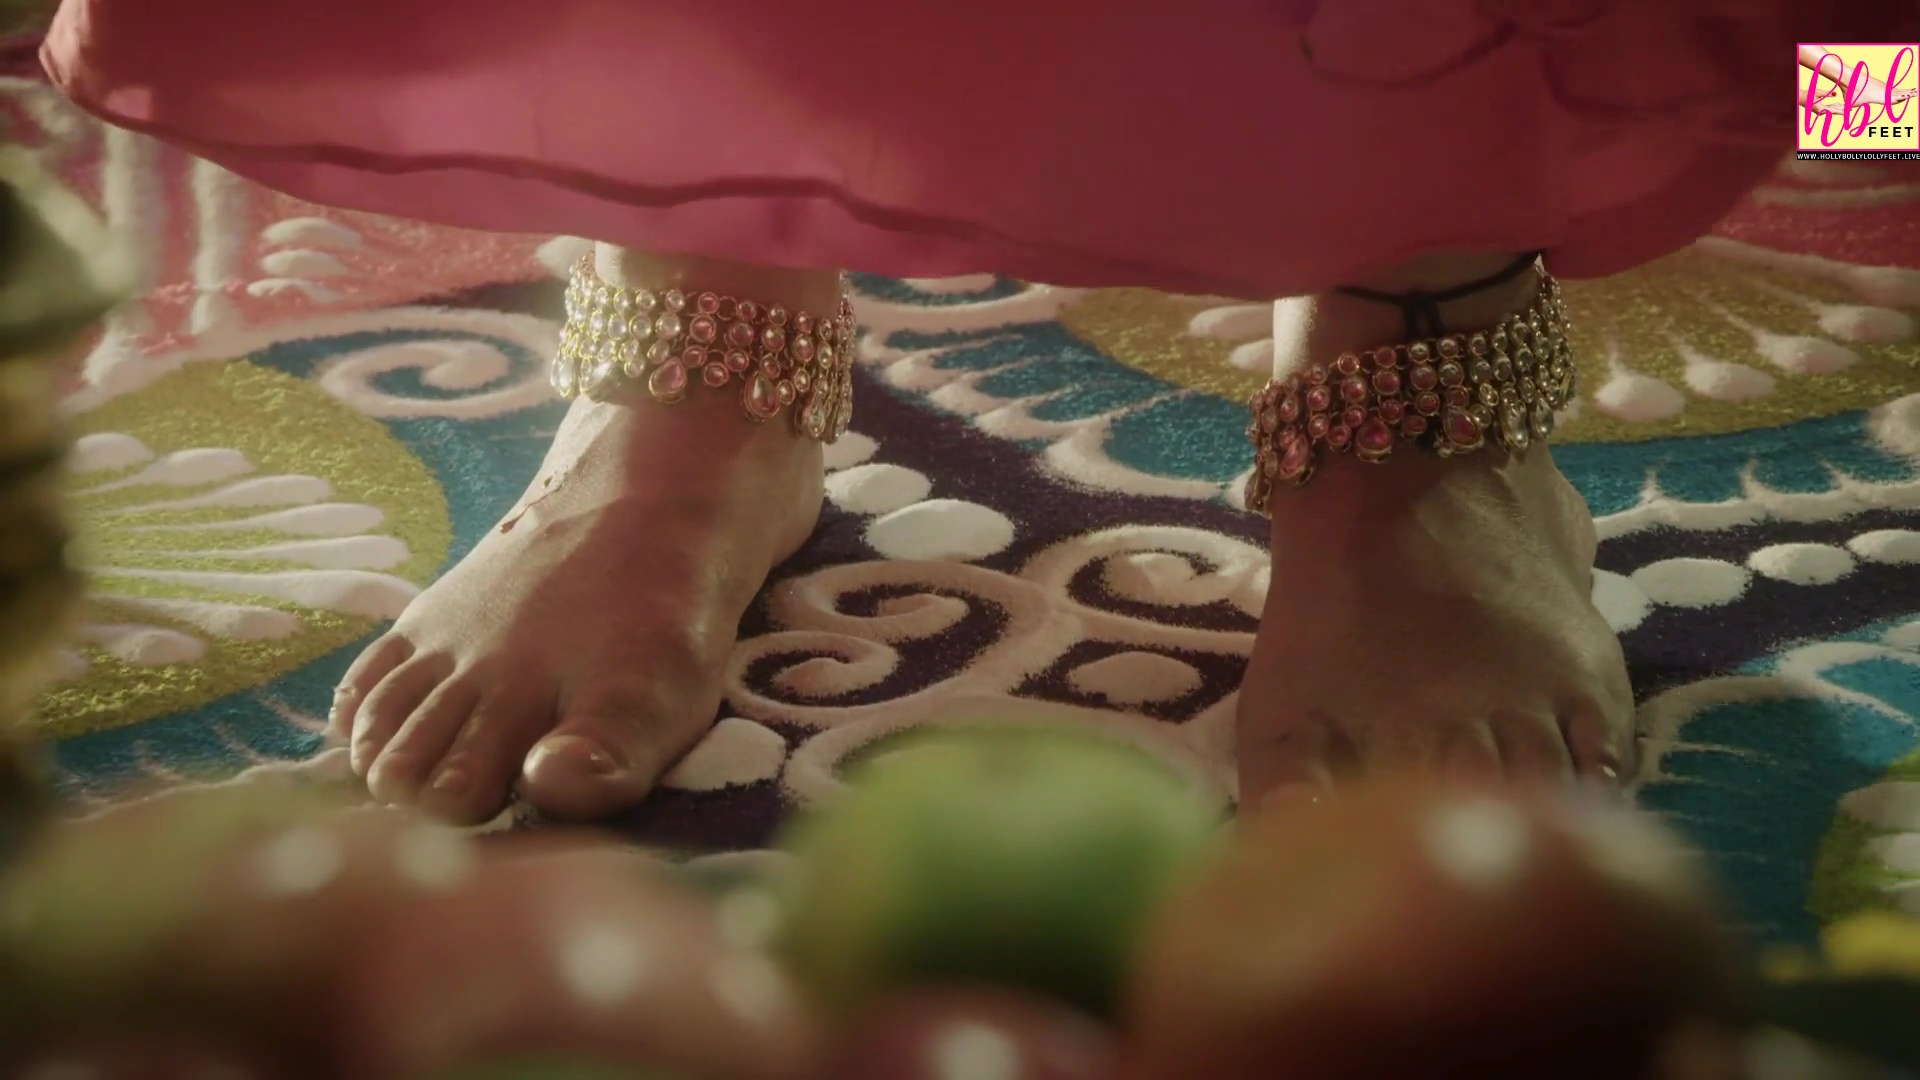 Hina Khan Feet Closeup Nice